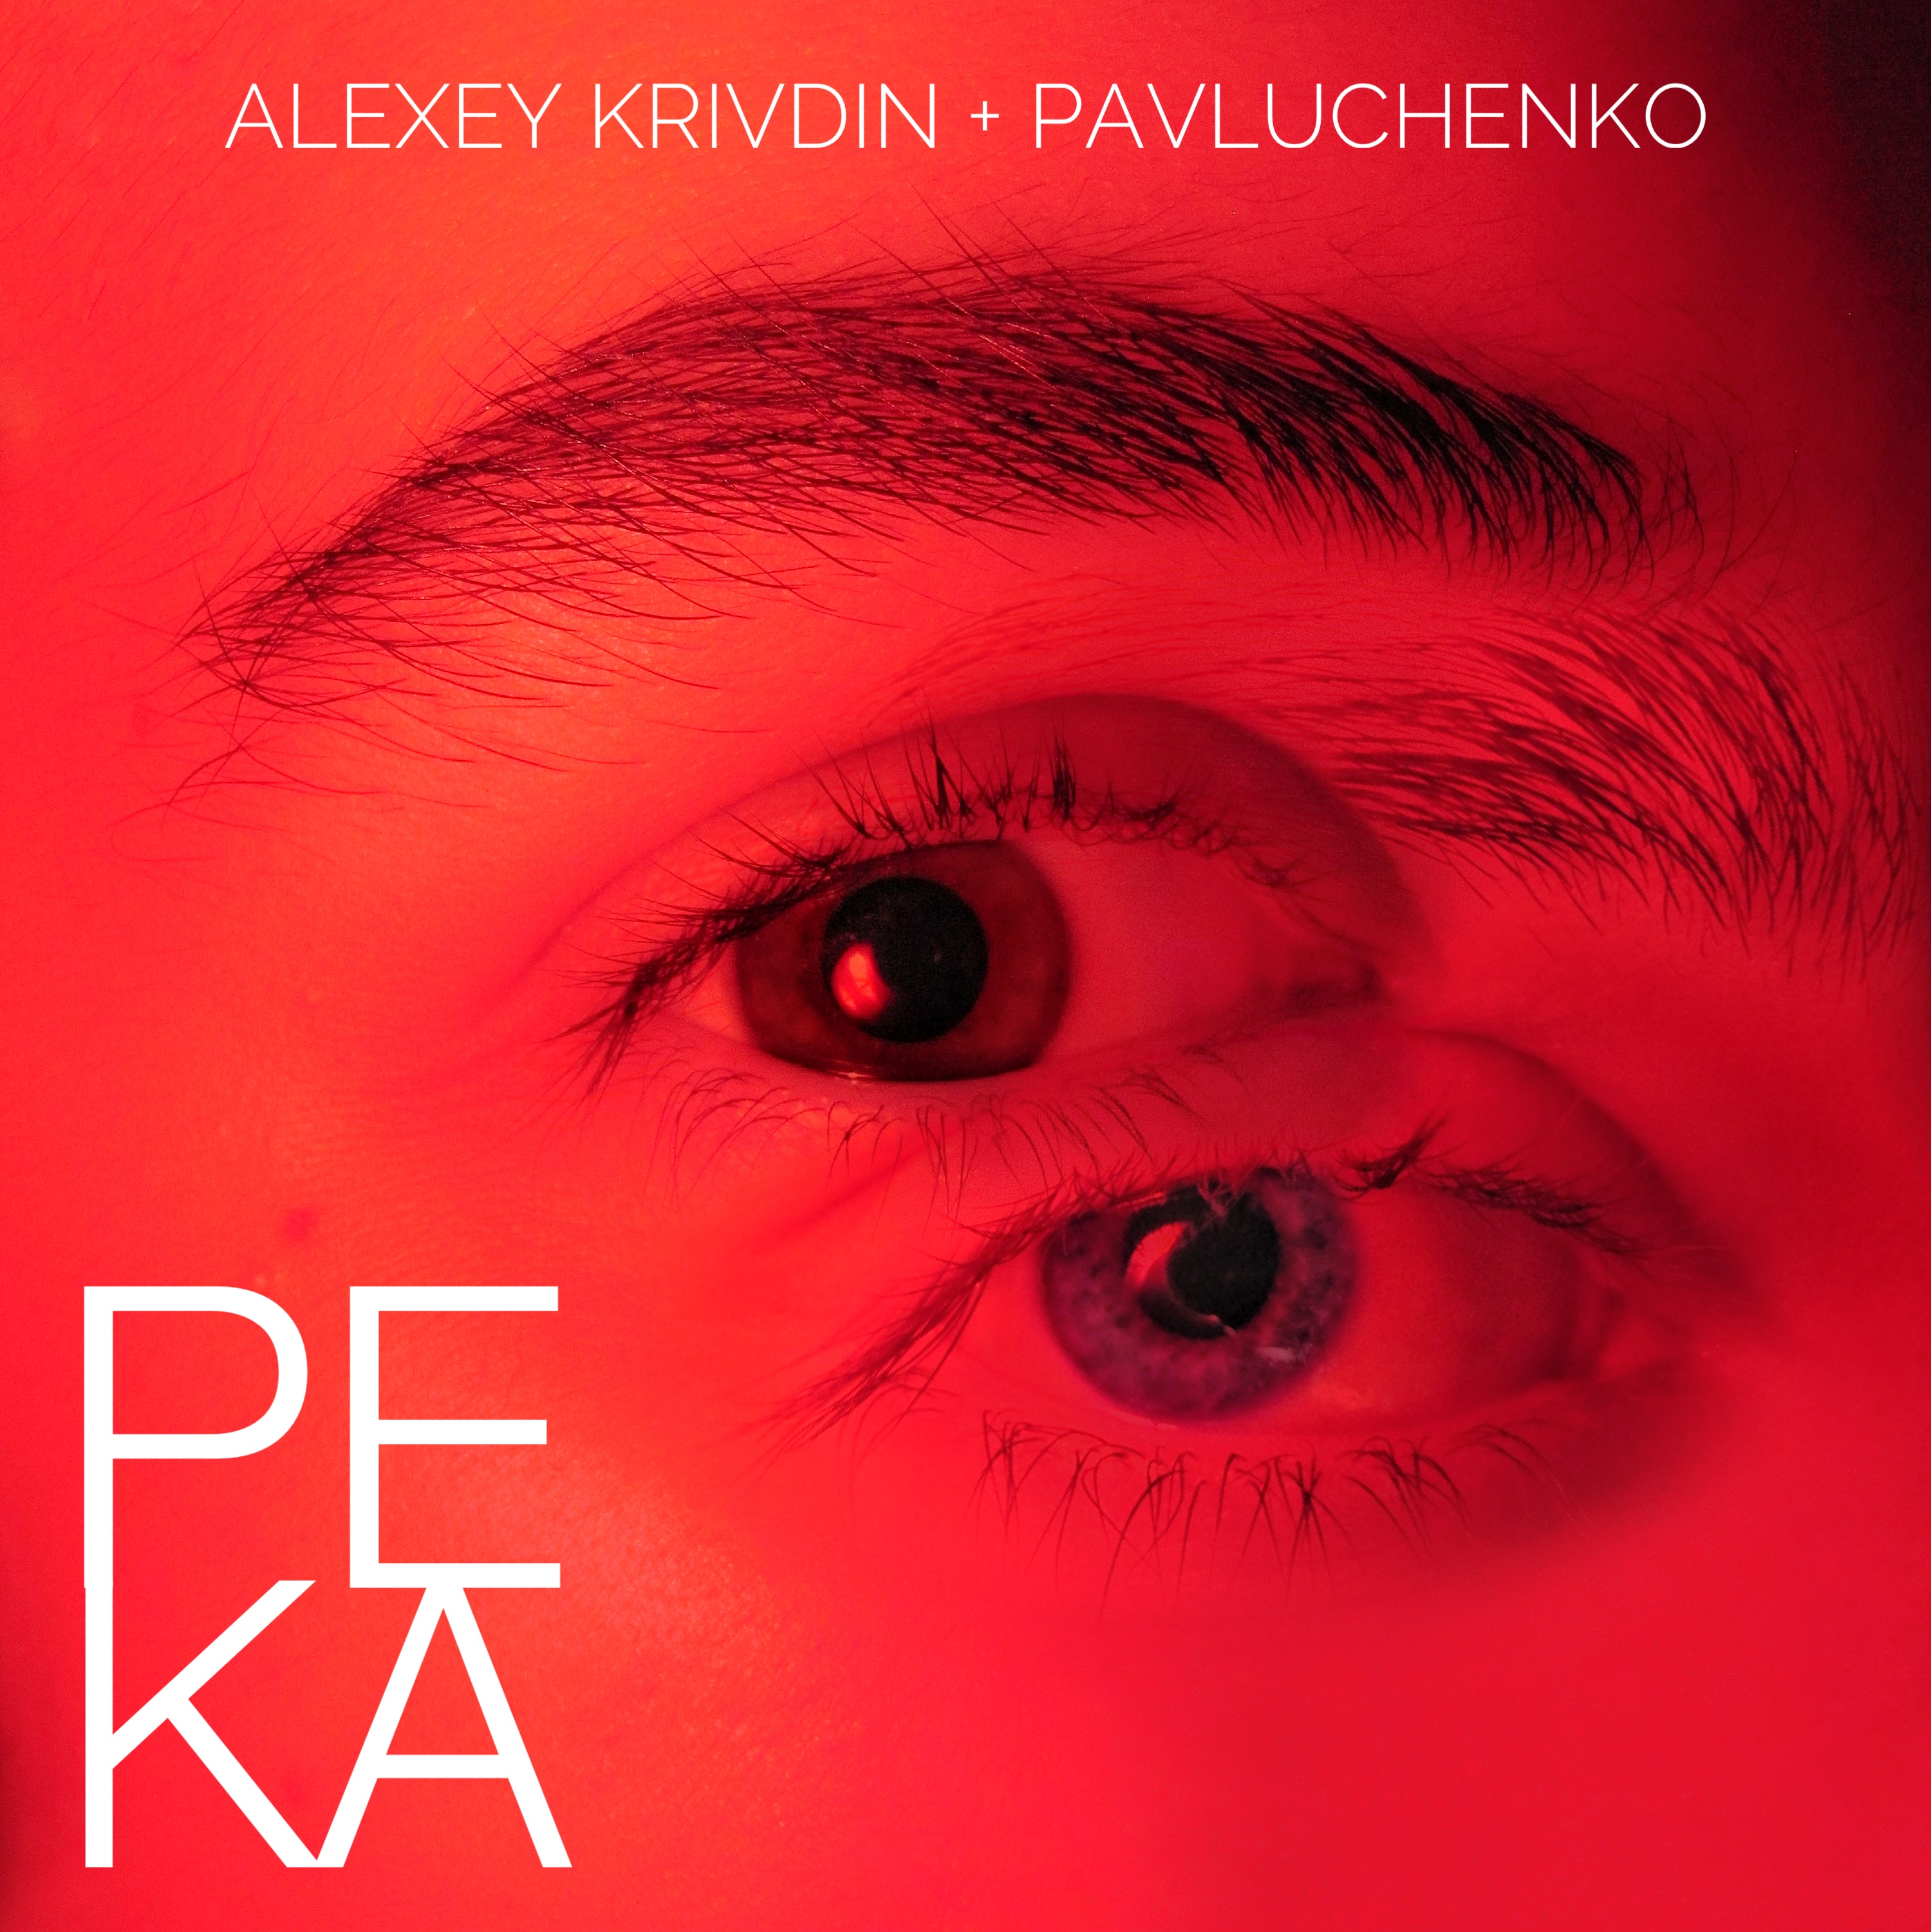 Download Pavluchenko, Alexey Krivdin - Река